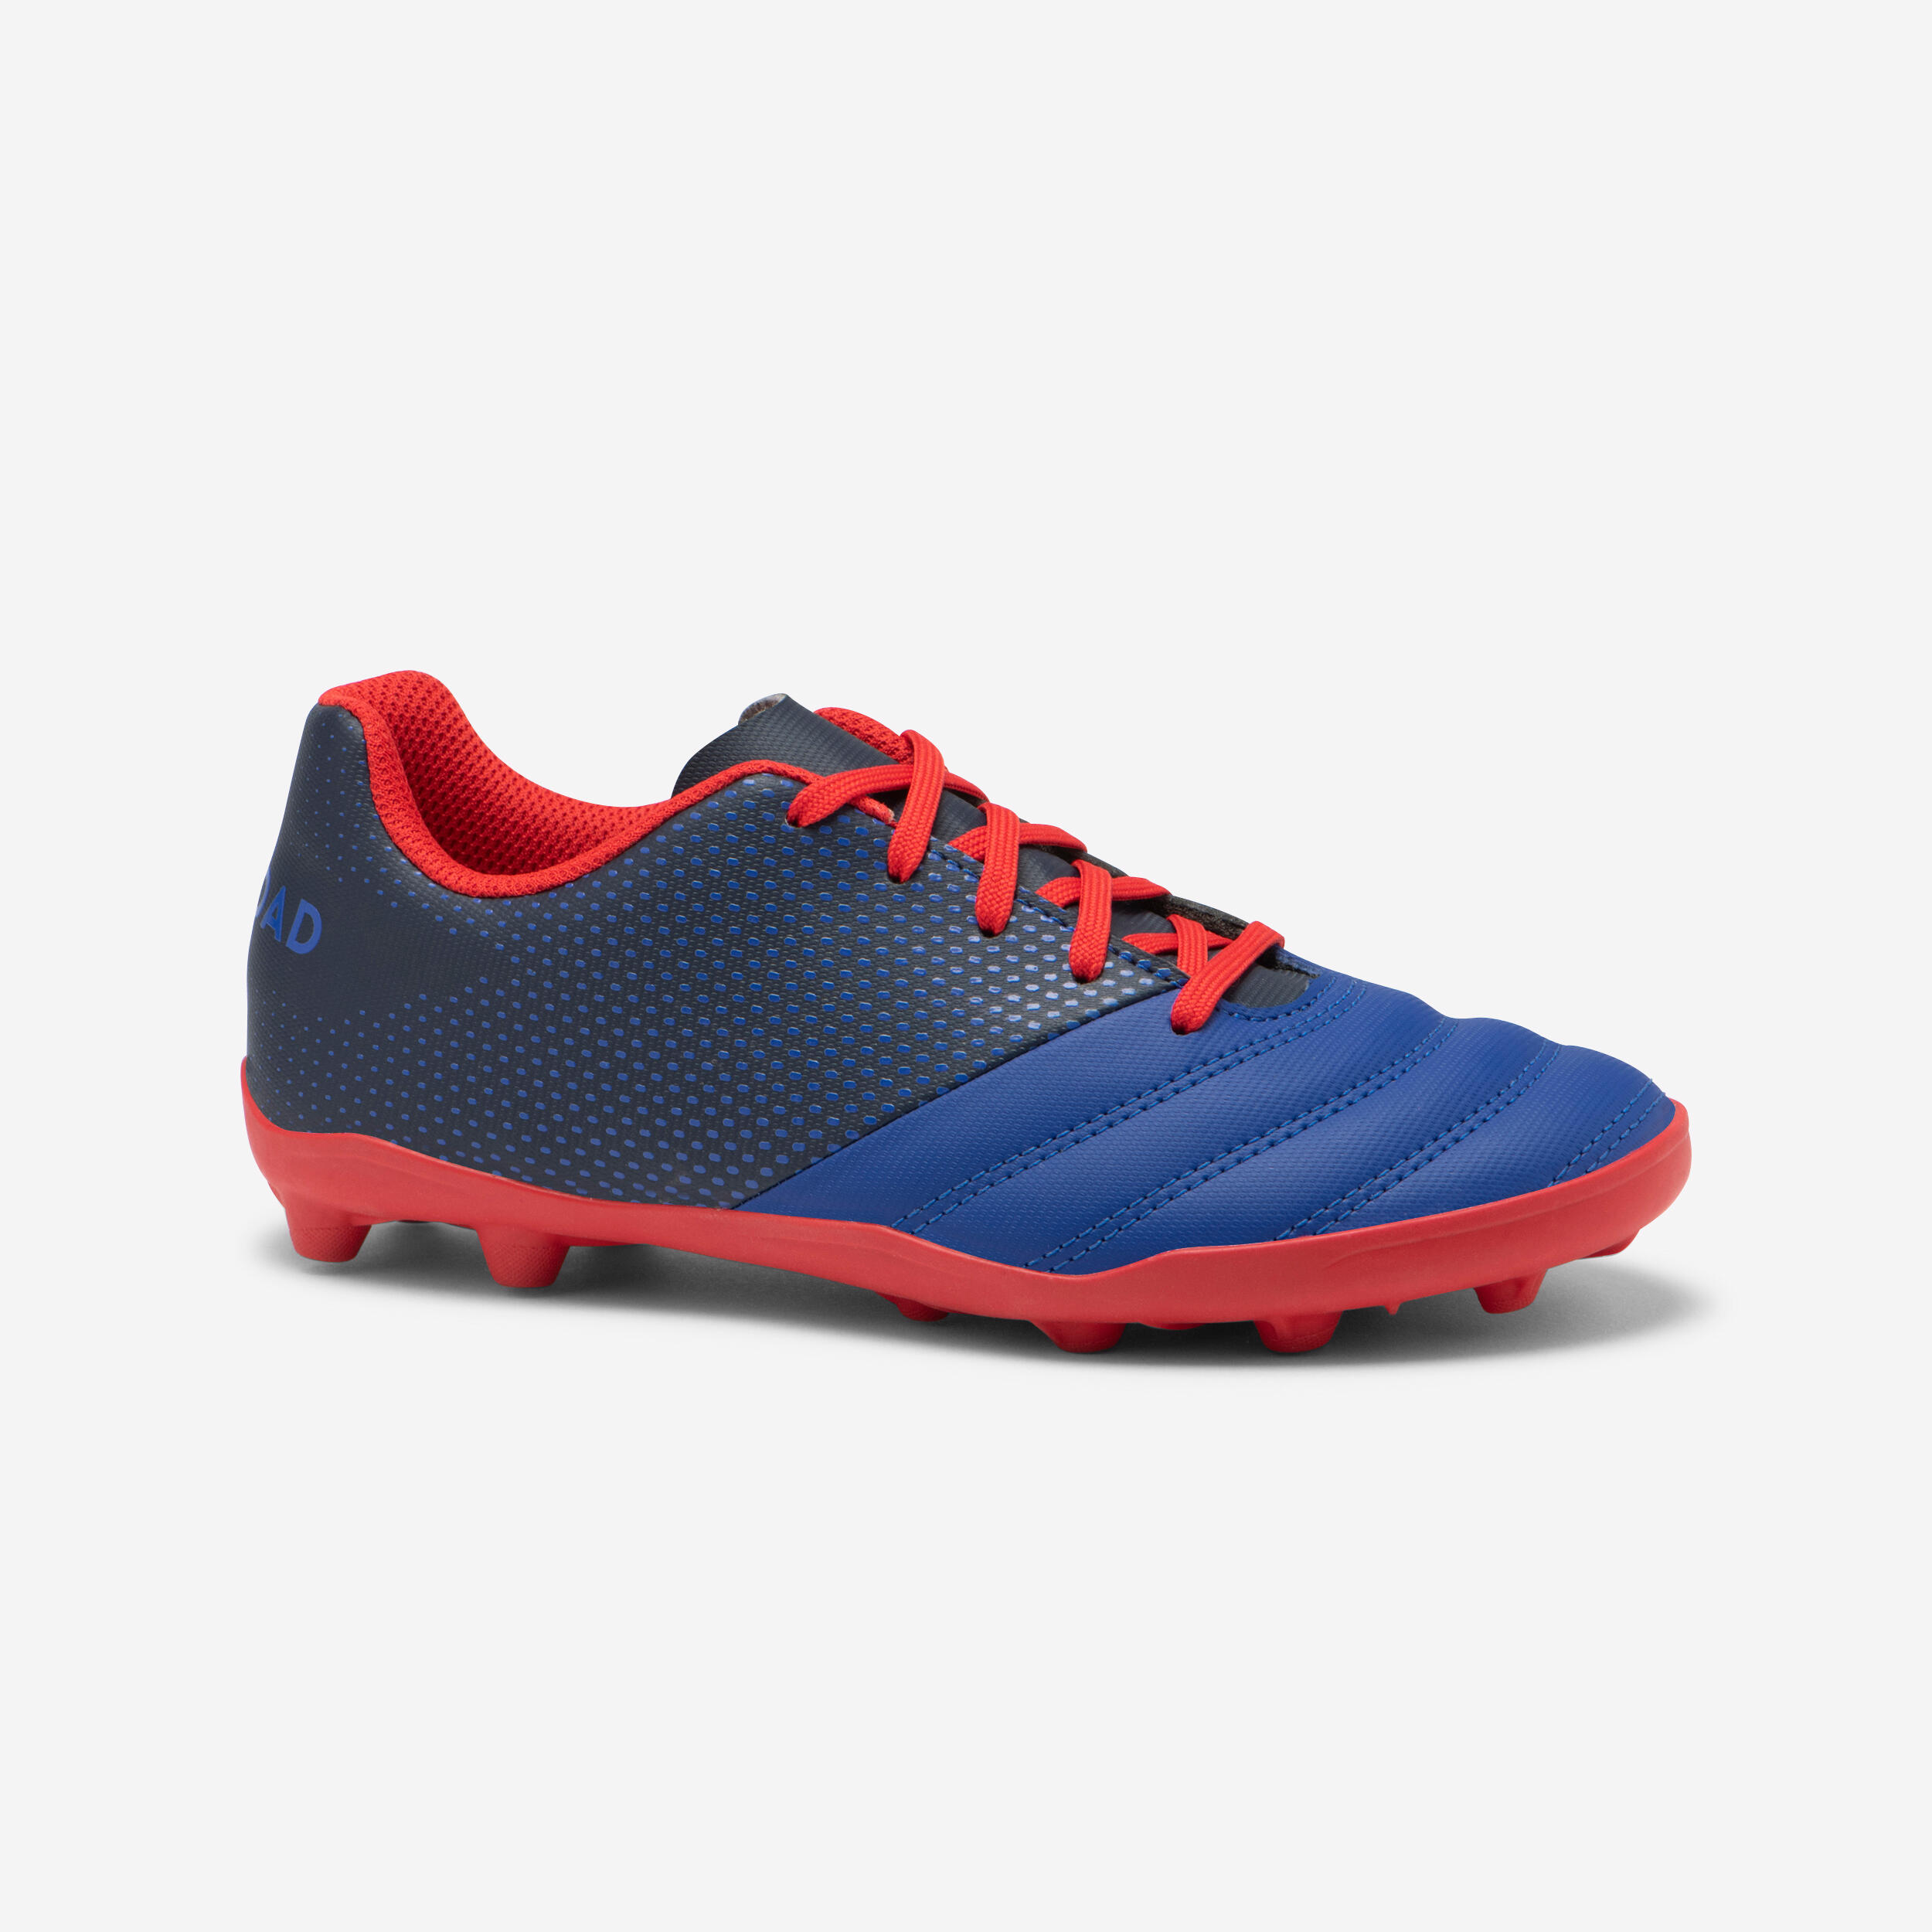 chaussures de rugby moulées terrain sec enfant - skill 100 fg bleu rouge - offload